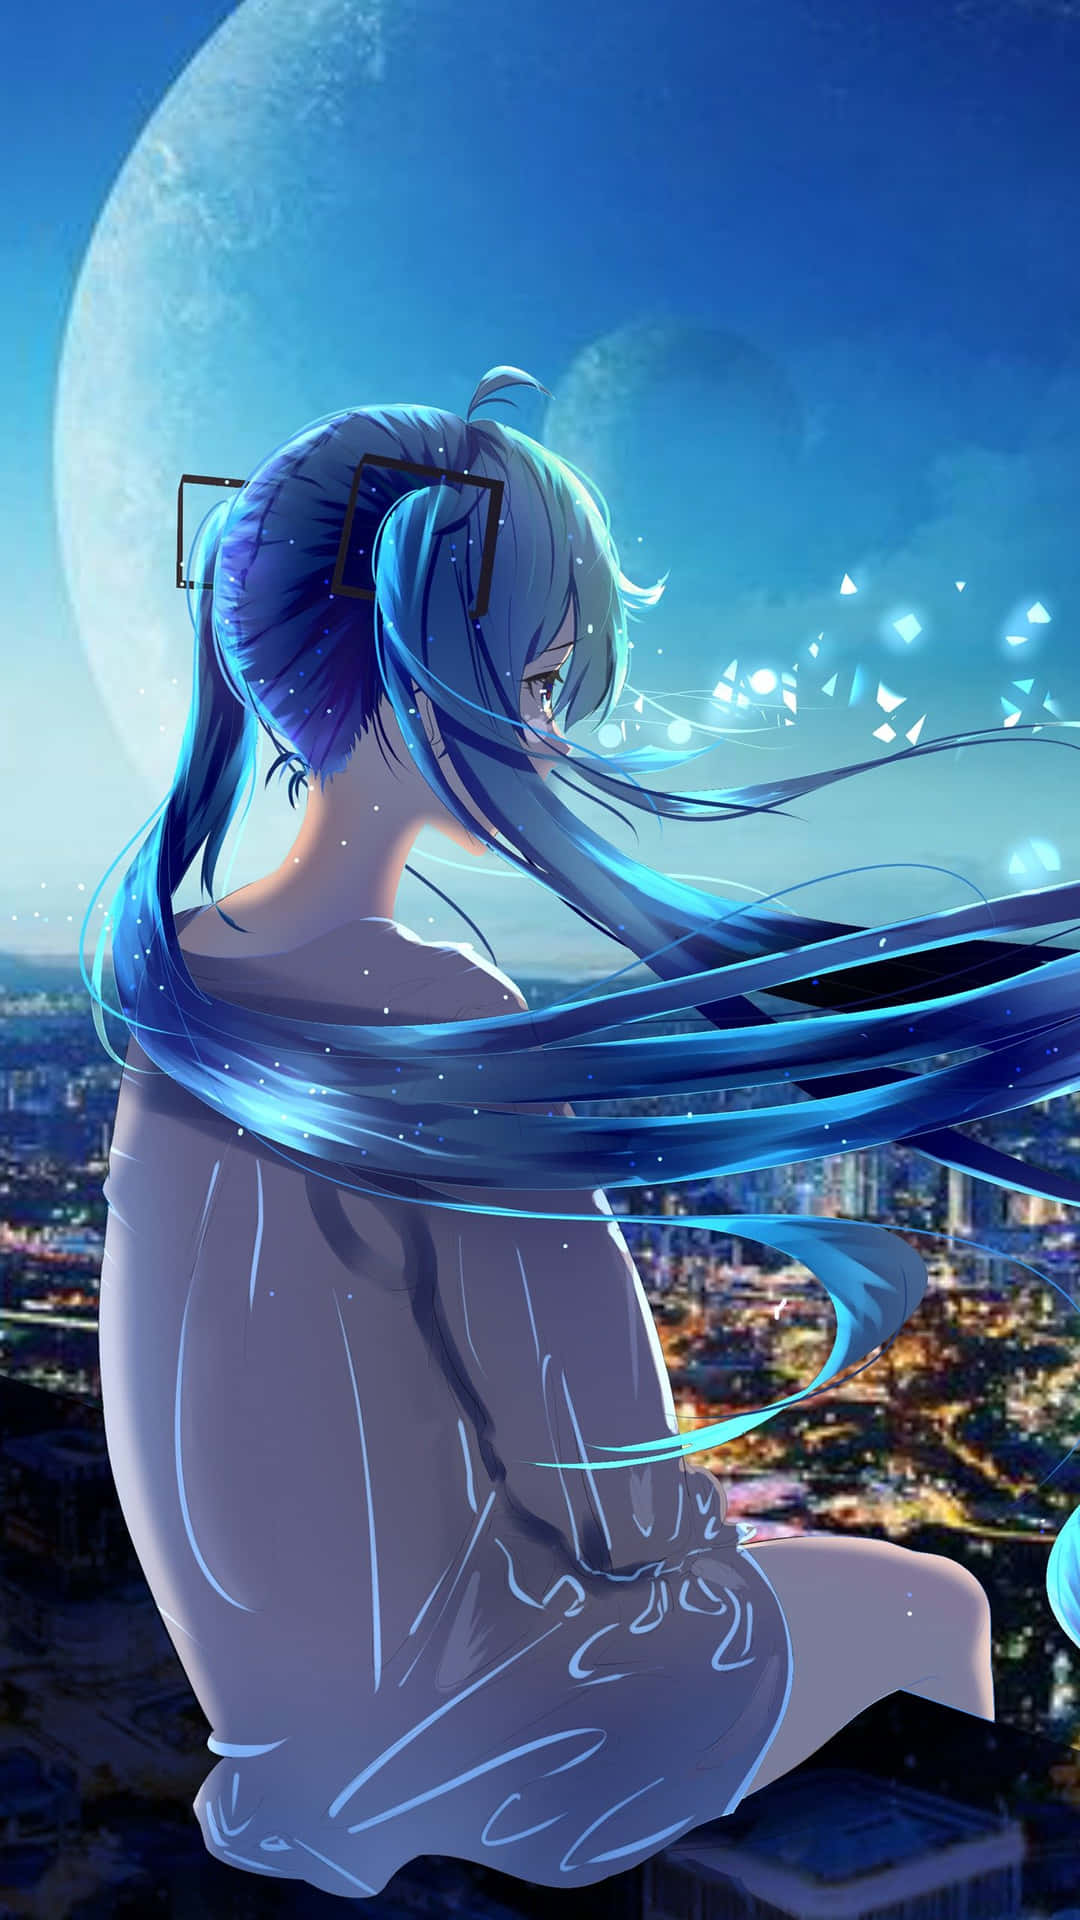 Moonlit Solitude Anime Art Wallpaper